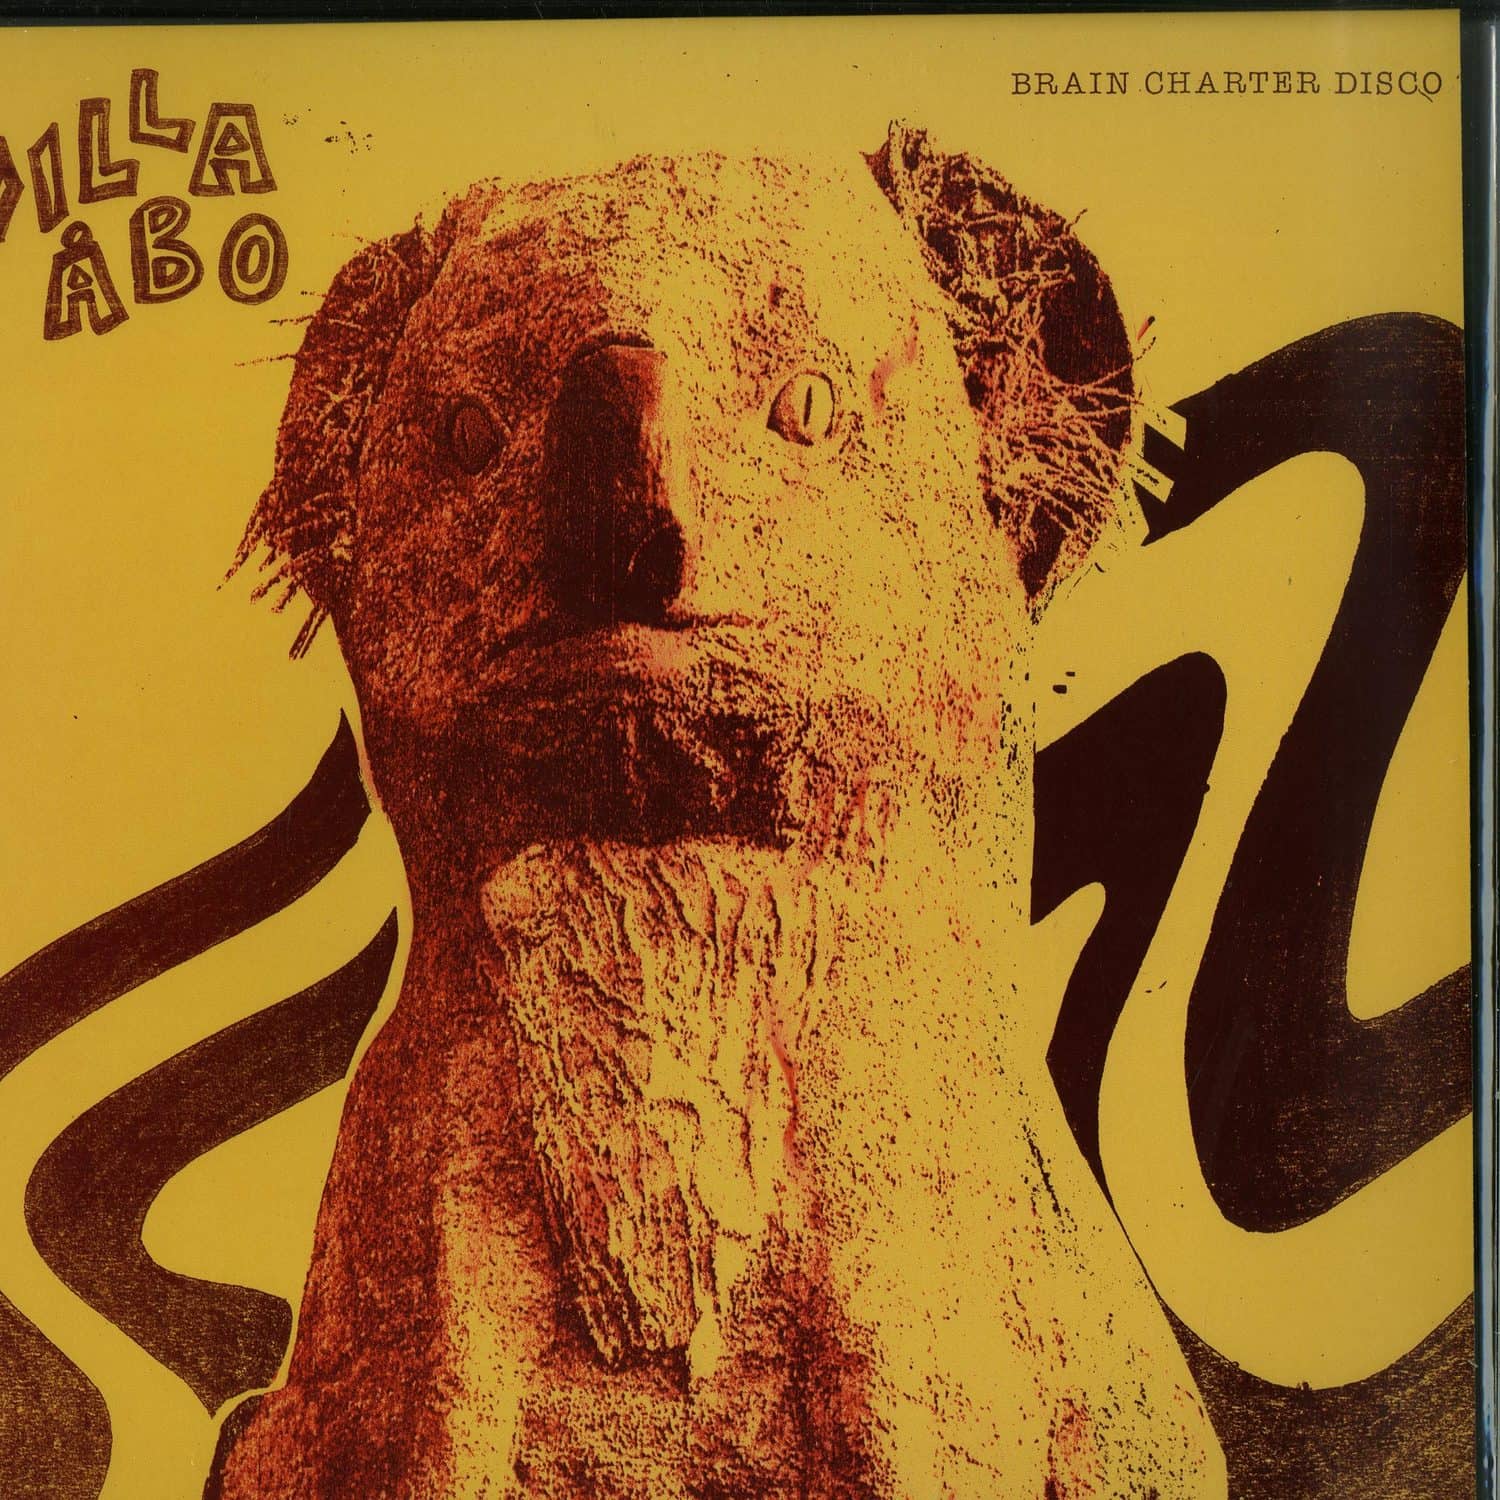 Villa Abo - BRAIN CHARTER DISCO EP